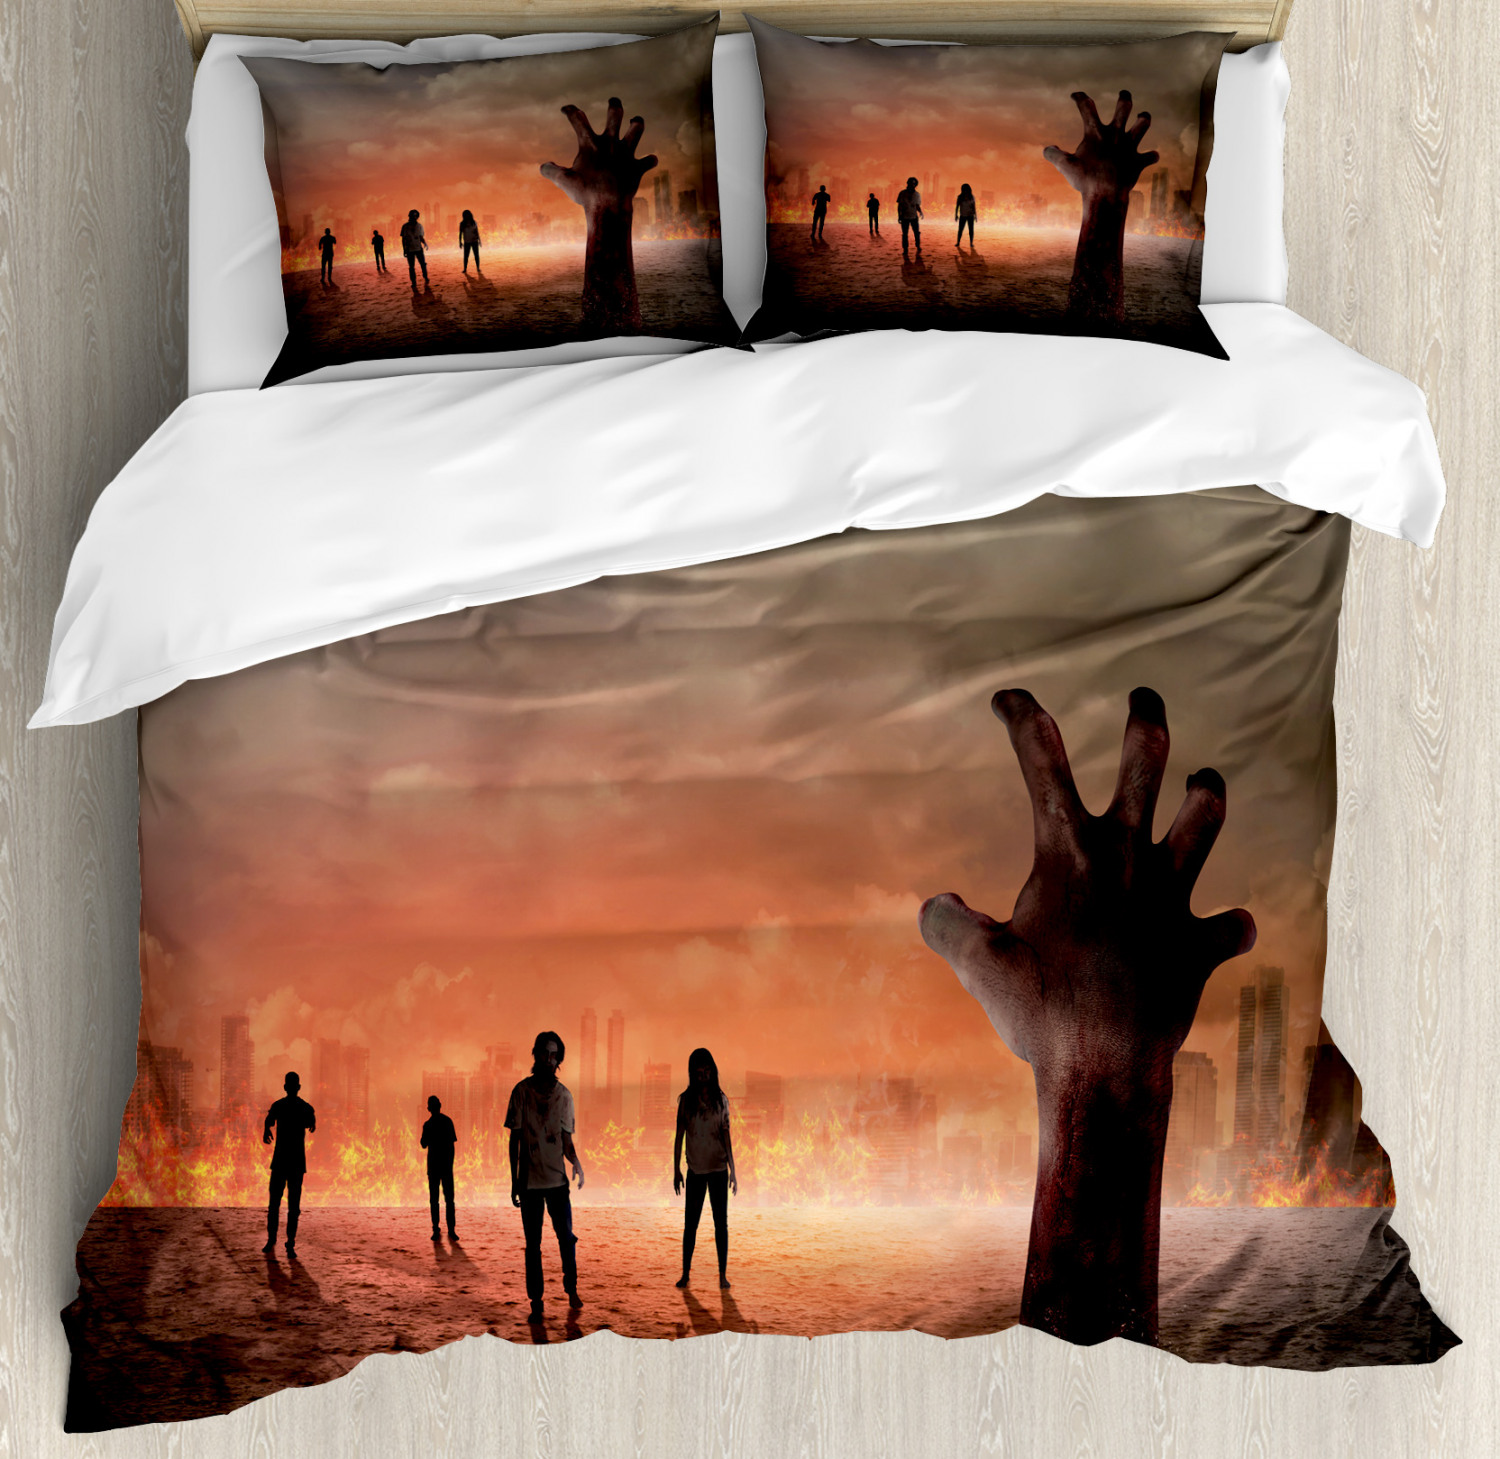 Pillow Shams Burning City, Zombie Duvet Cover